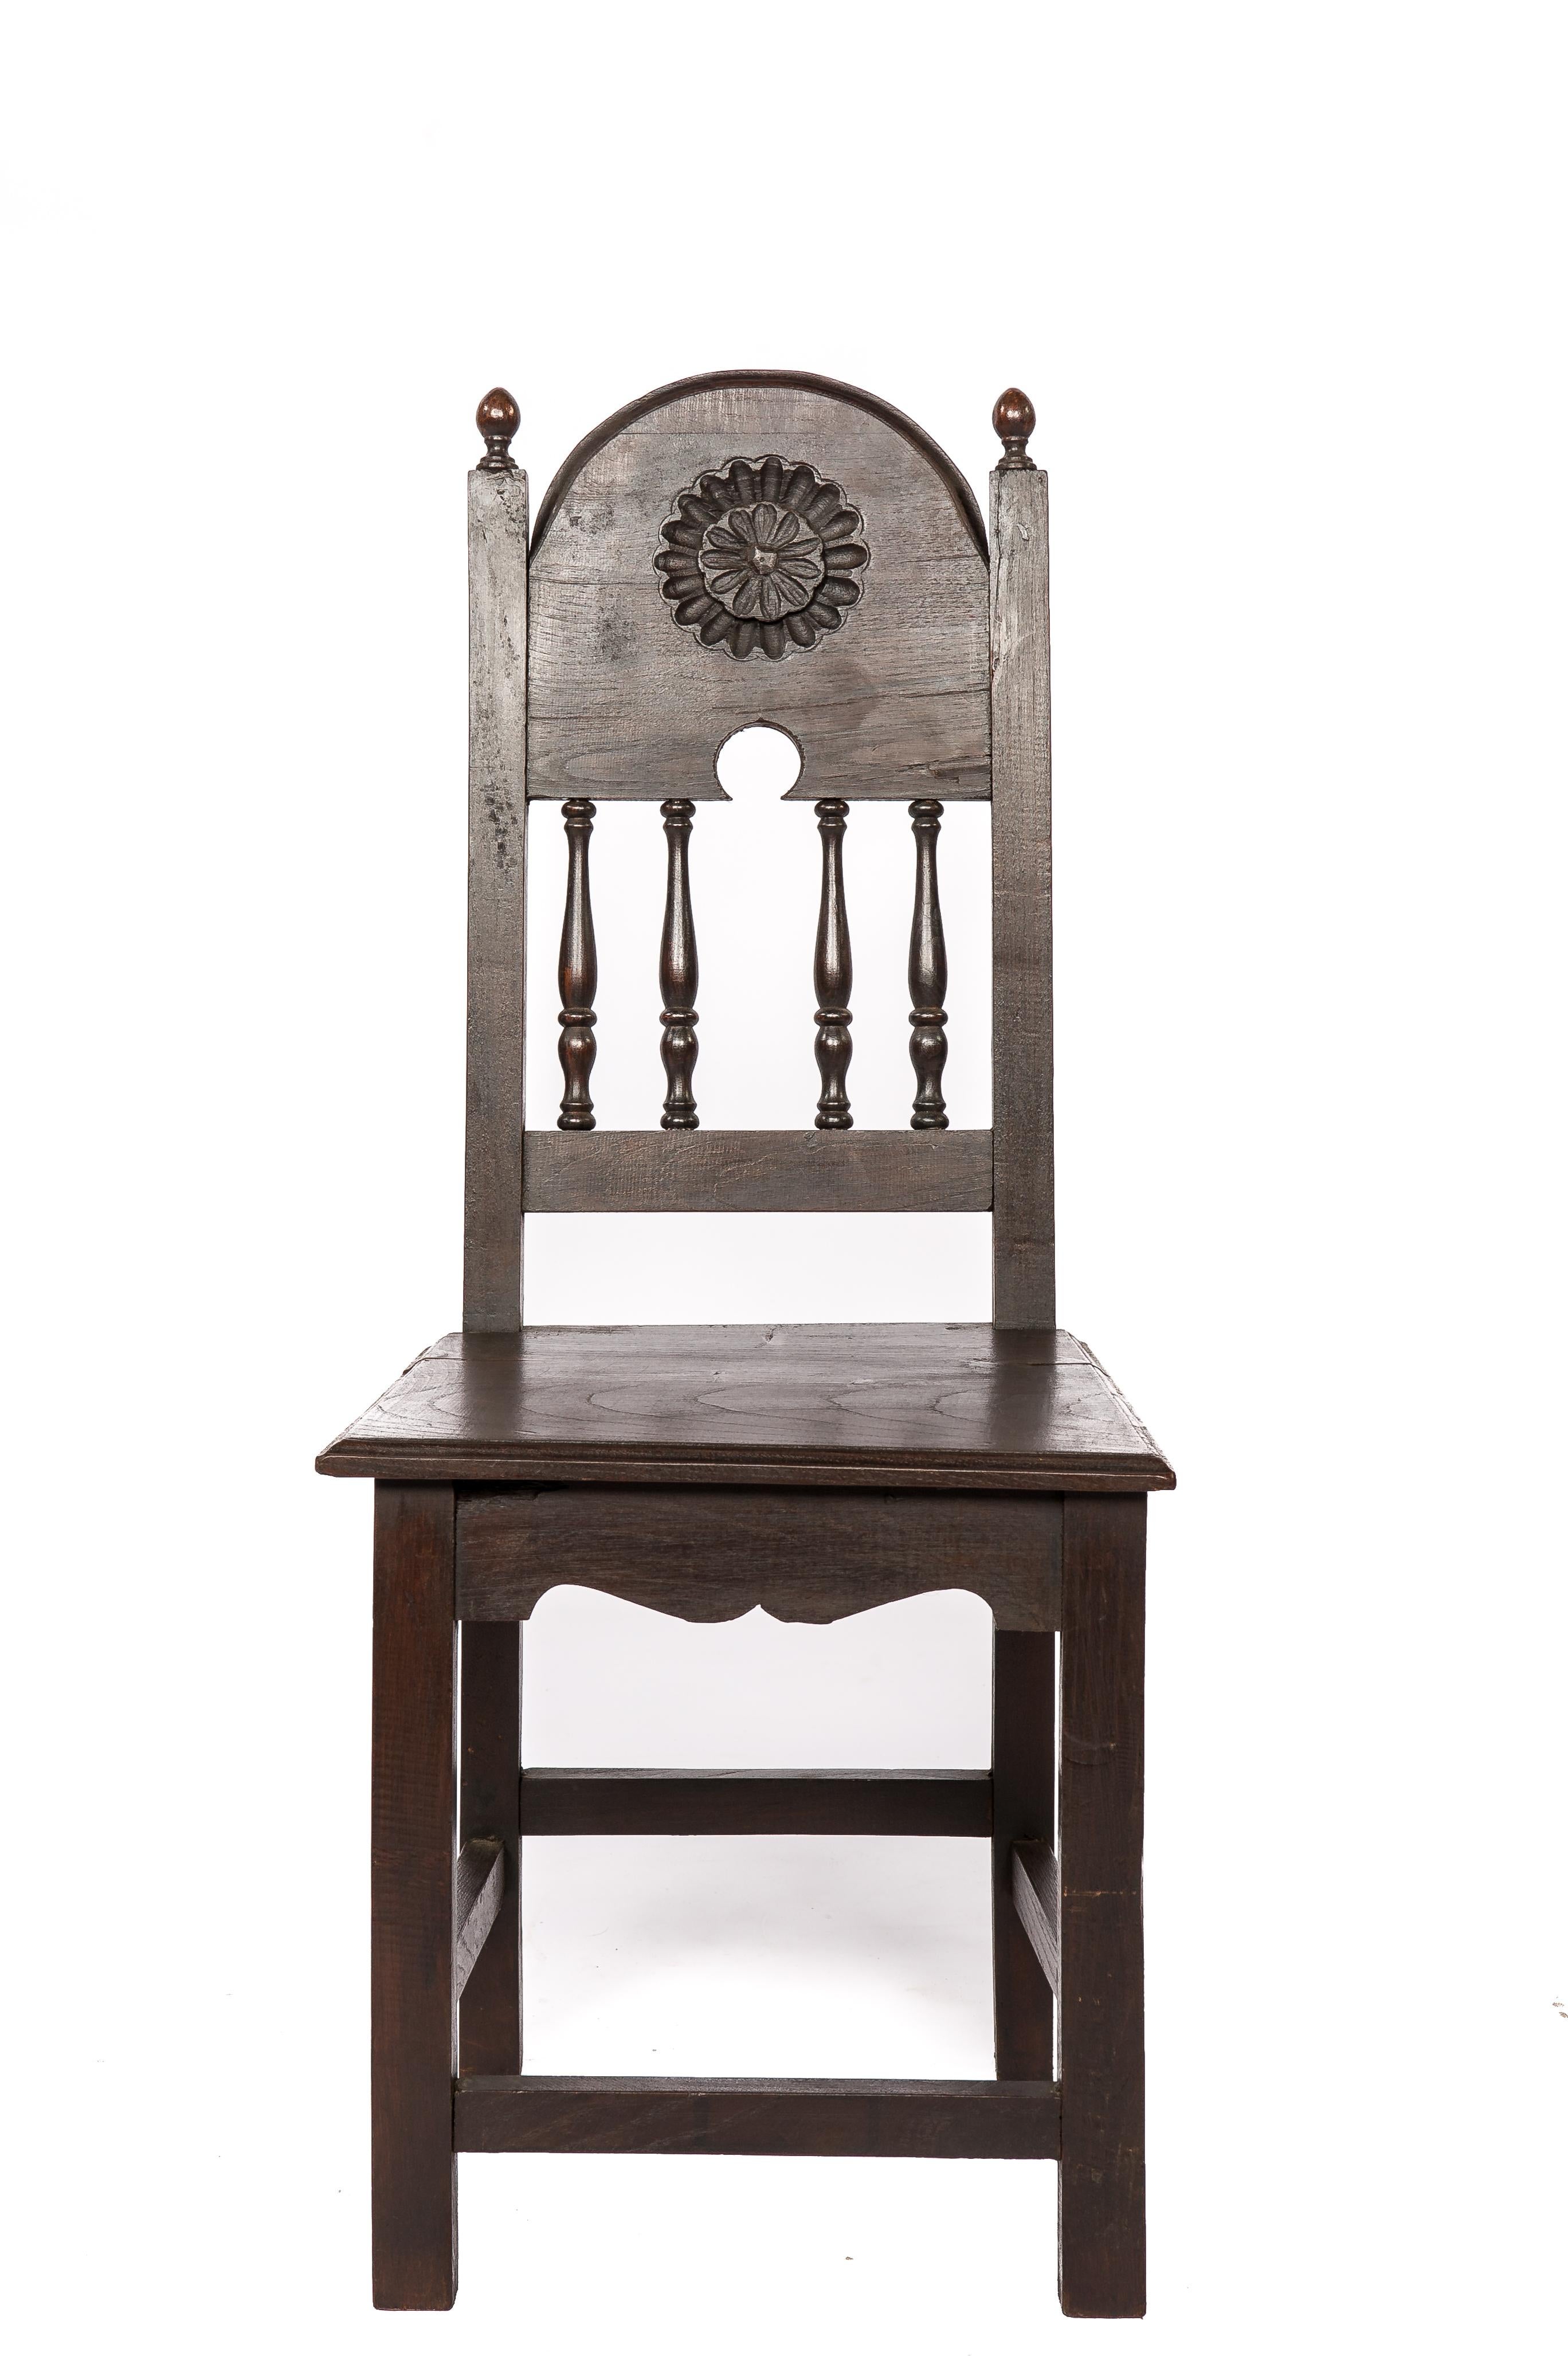 Nous vous proposons ici un magnifique ensemble de quatre chaises identiques, fabriquées en bois de châtaignier massif dans l'Espagne du début du XXe siècle. Ces chaises témoignent de l'artisanat espagnol et présentent un design intemporel qui allie